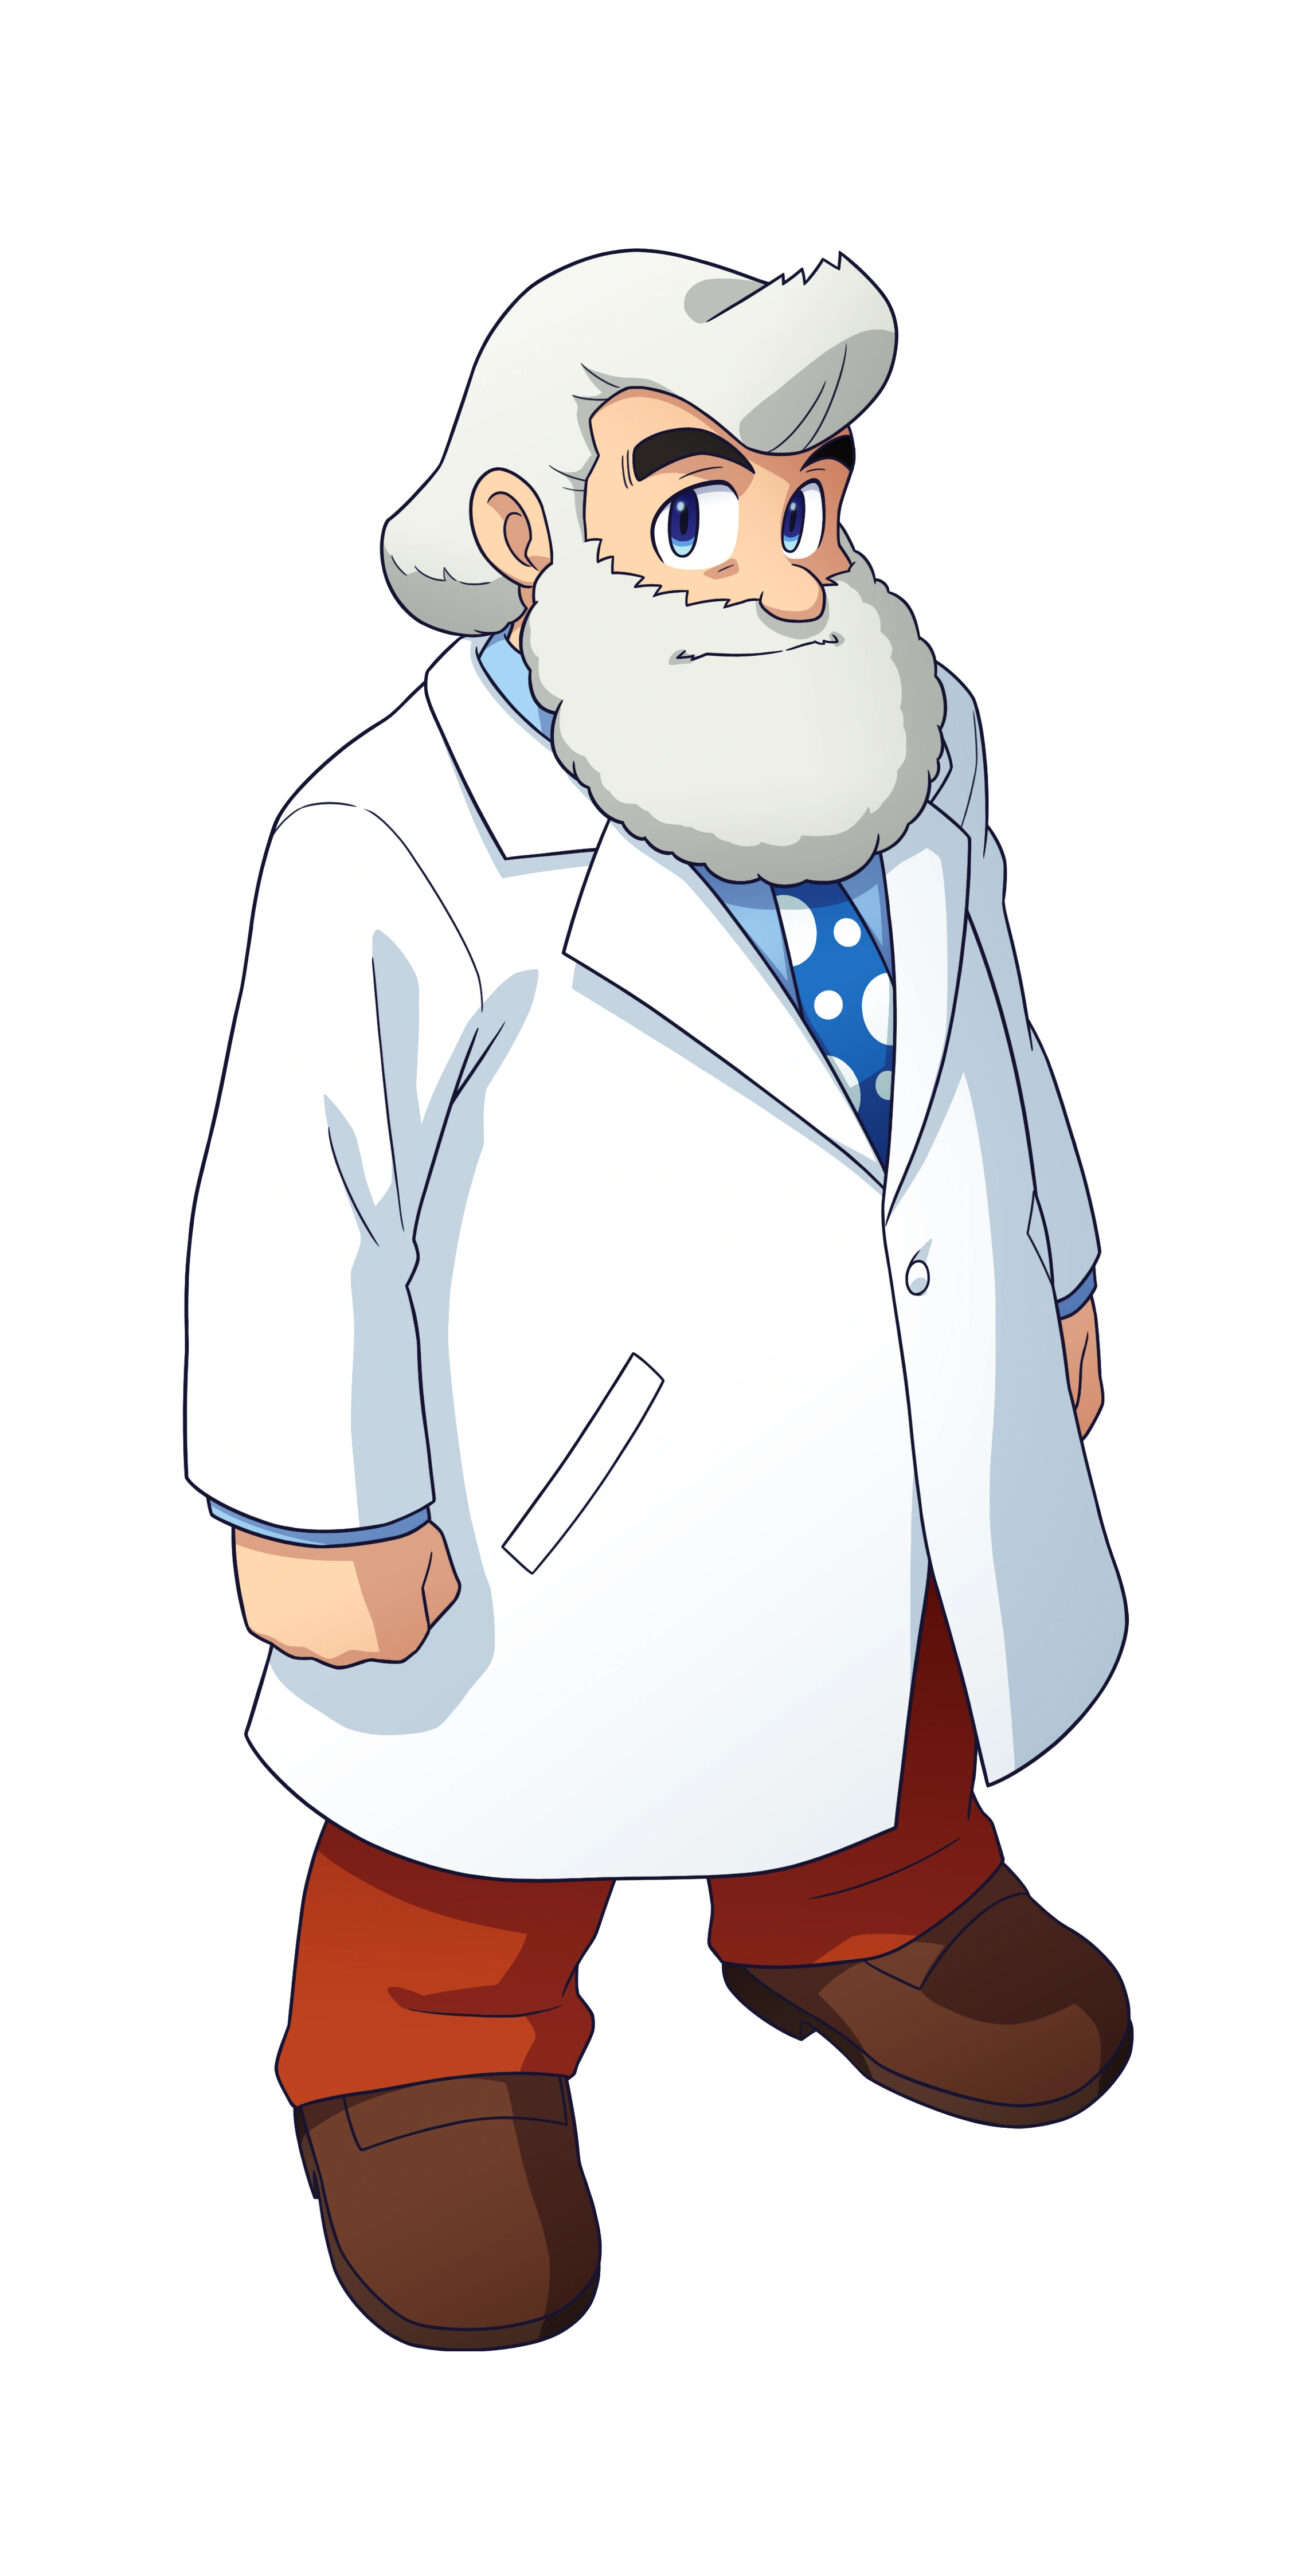 دکتر لایت (Dr. Light) در بازی Mega Man